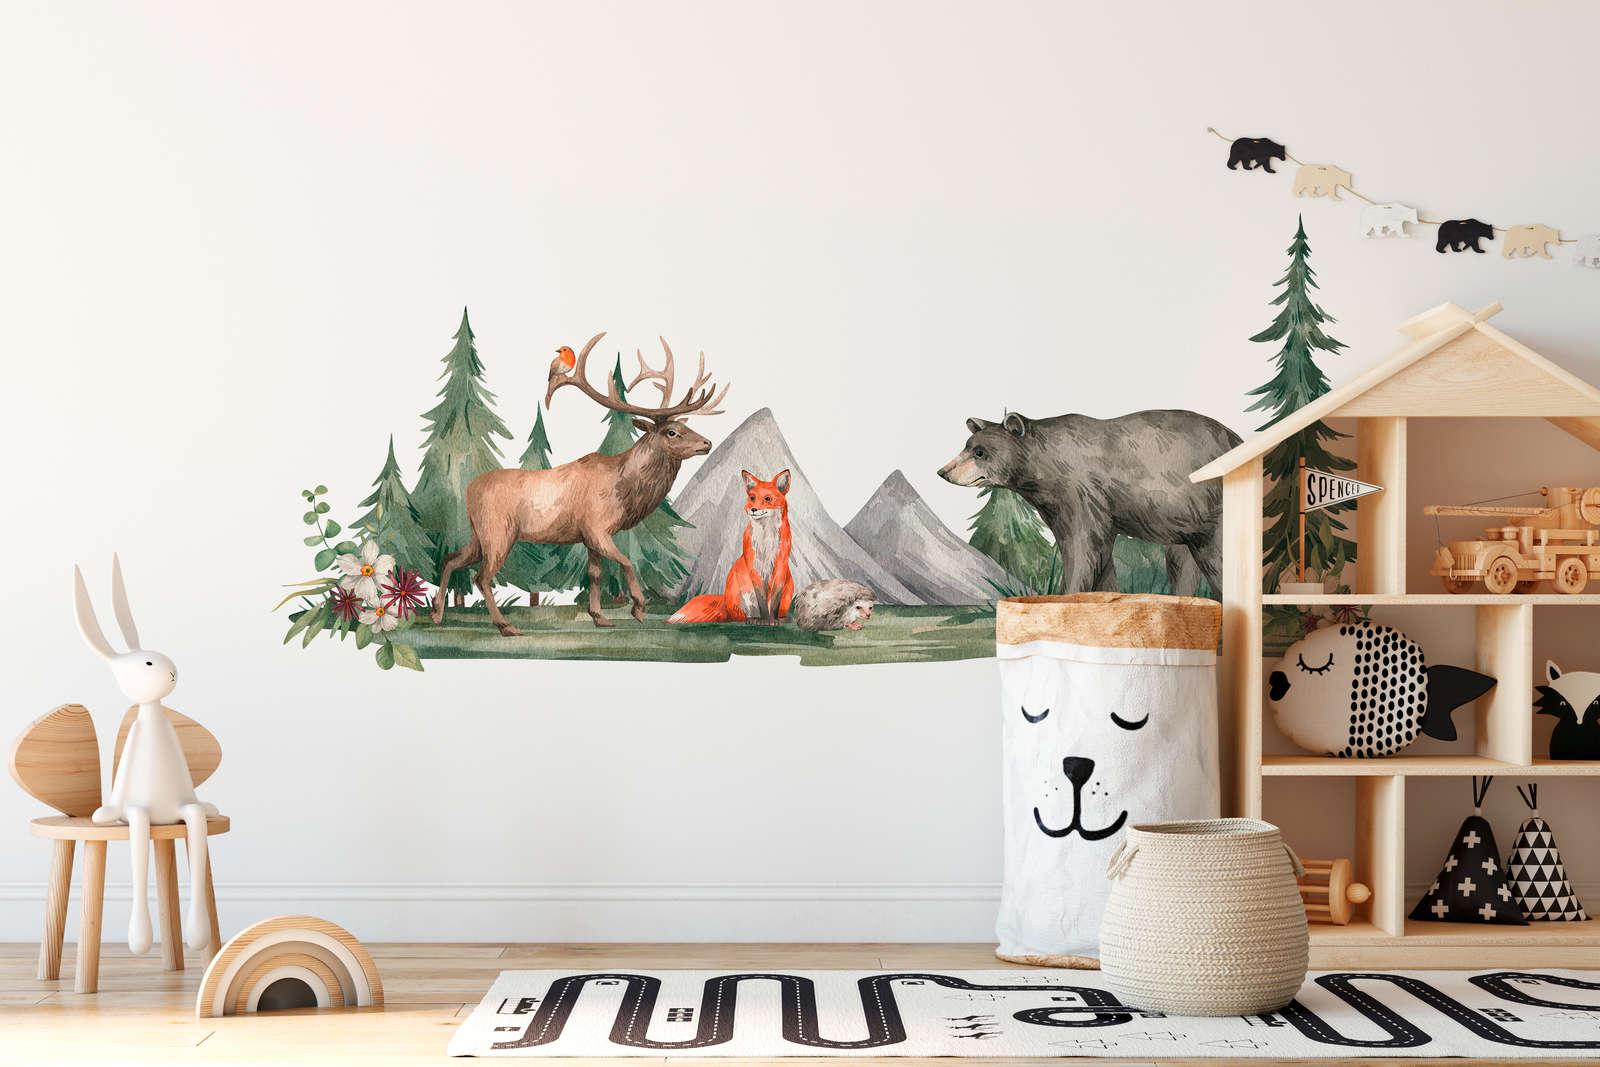             Papier peint panoramique chambre d'enfant avec des animaux dans la forêt - vert, marron, blanc
        